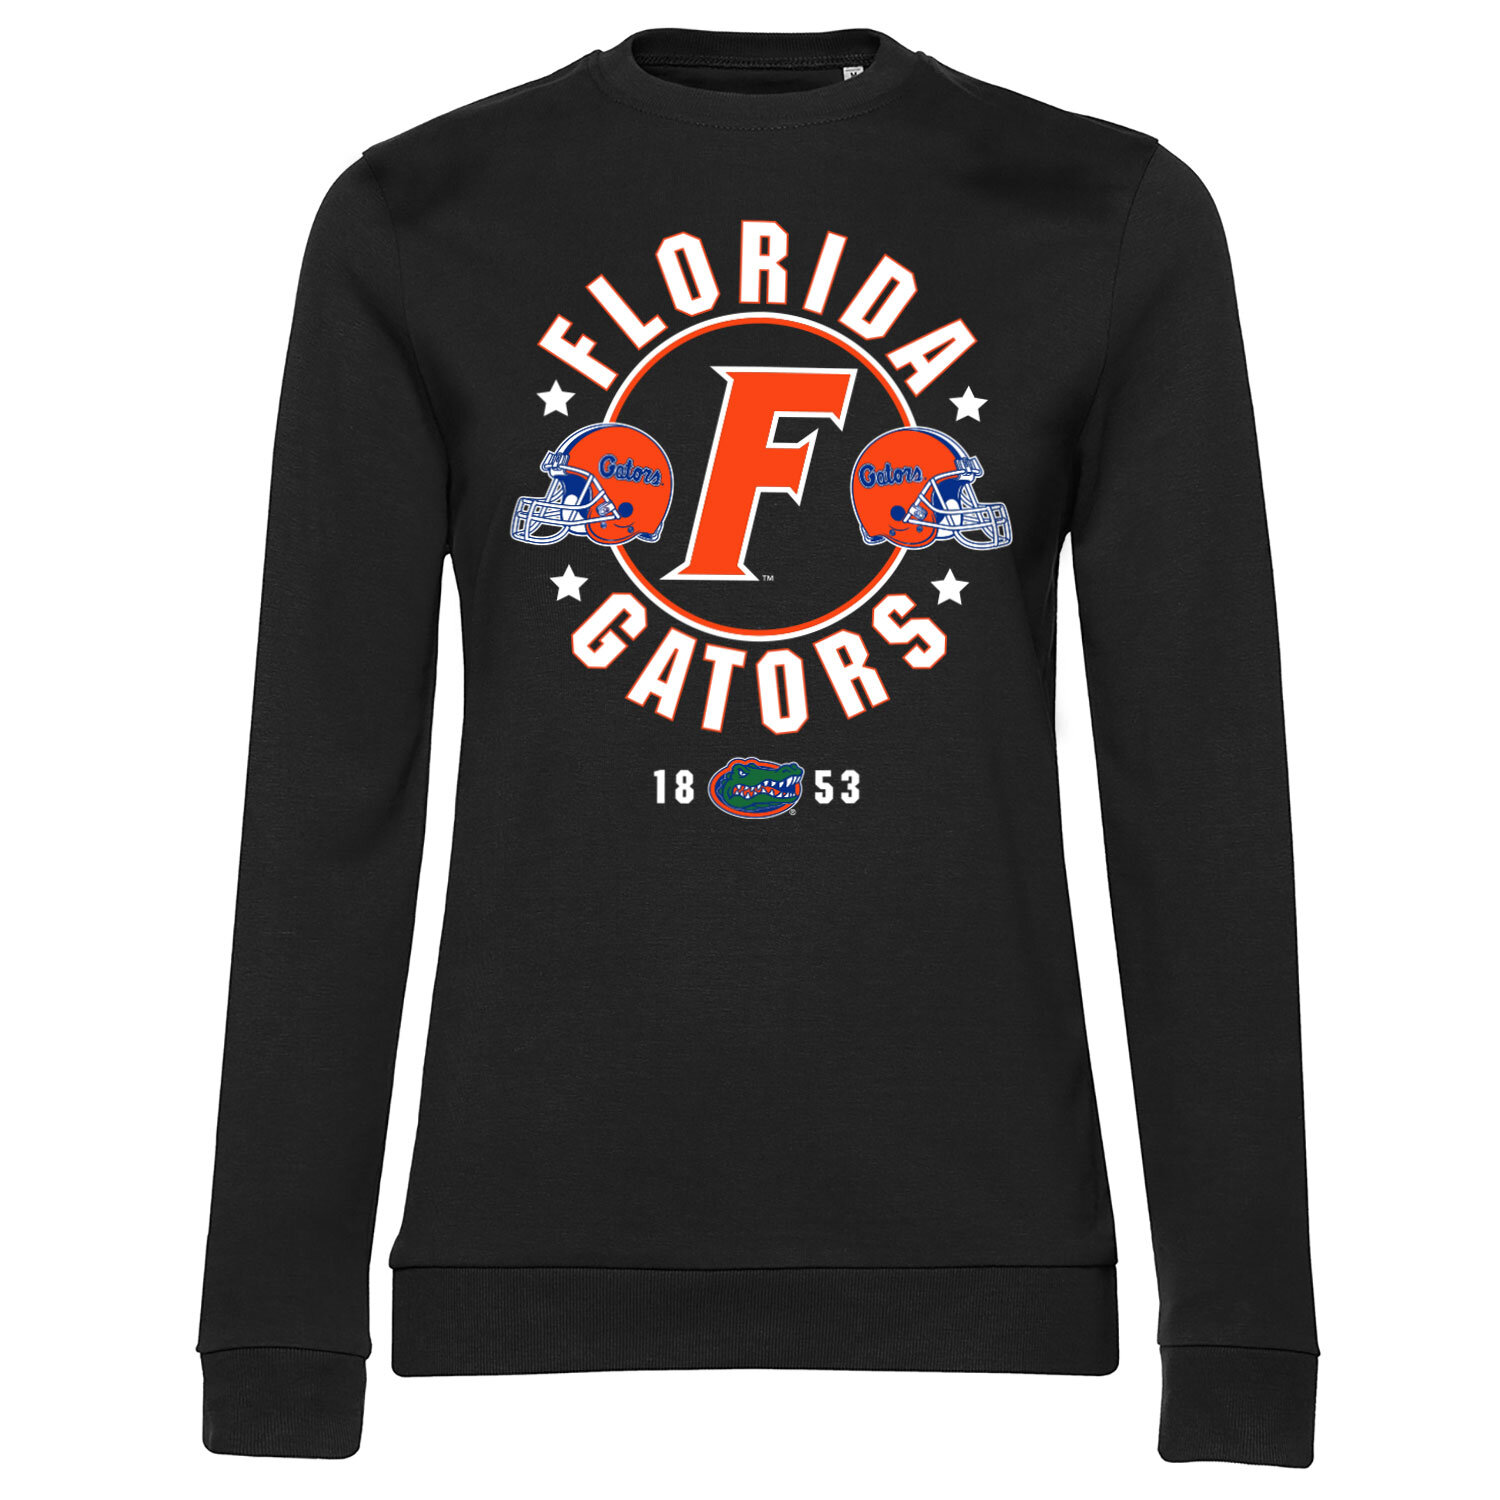 Florida Gators Since 1853 Girly Sweatshirt